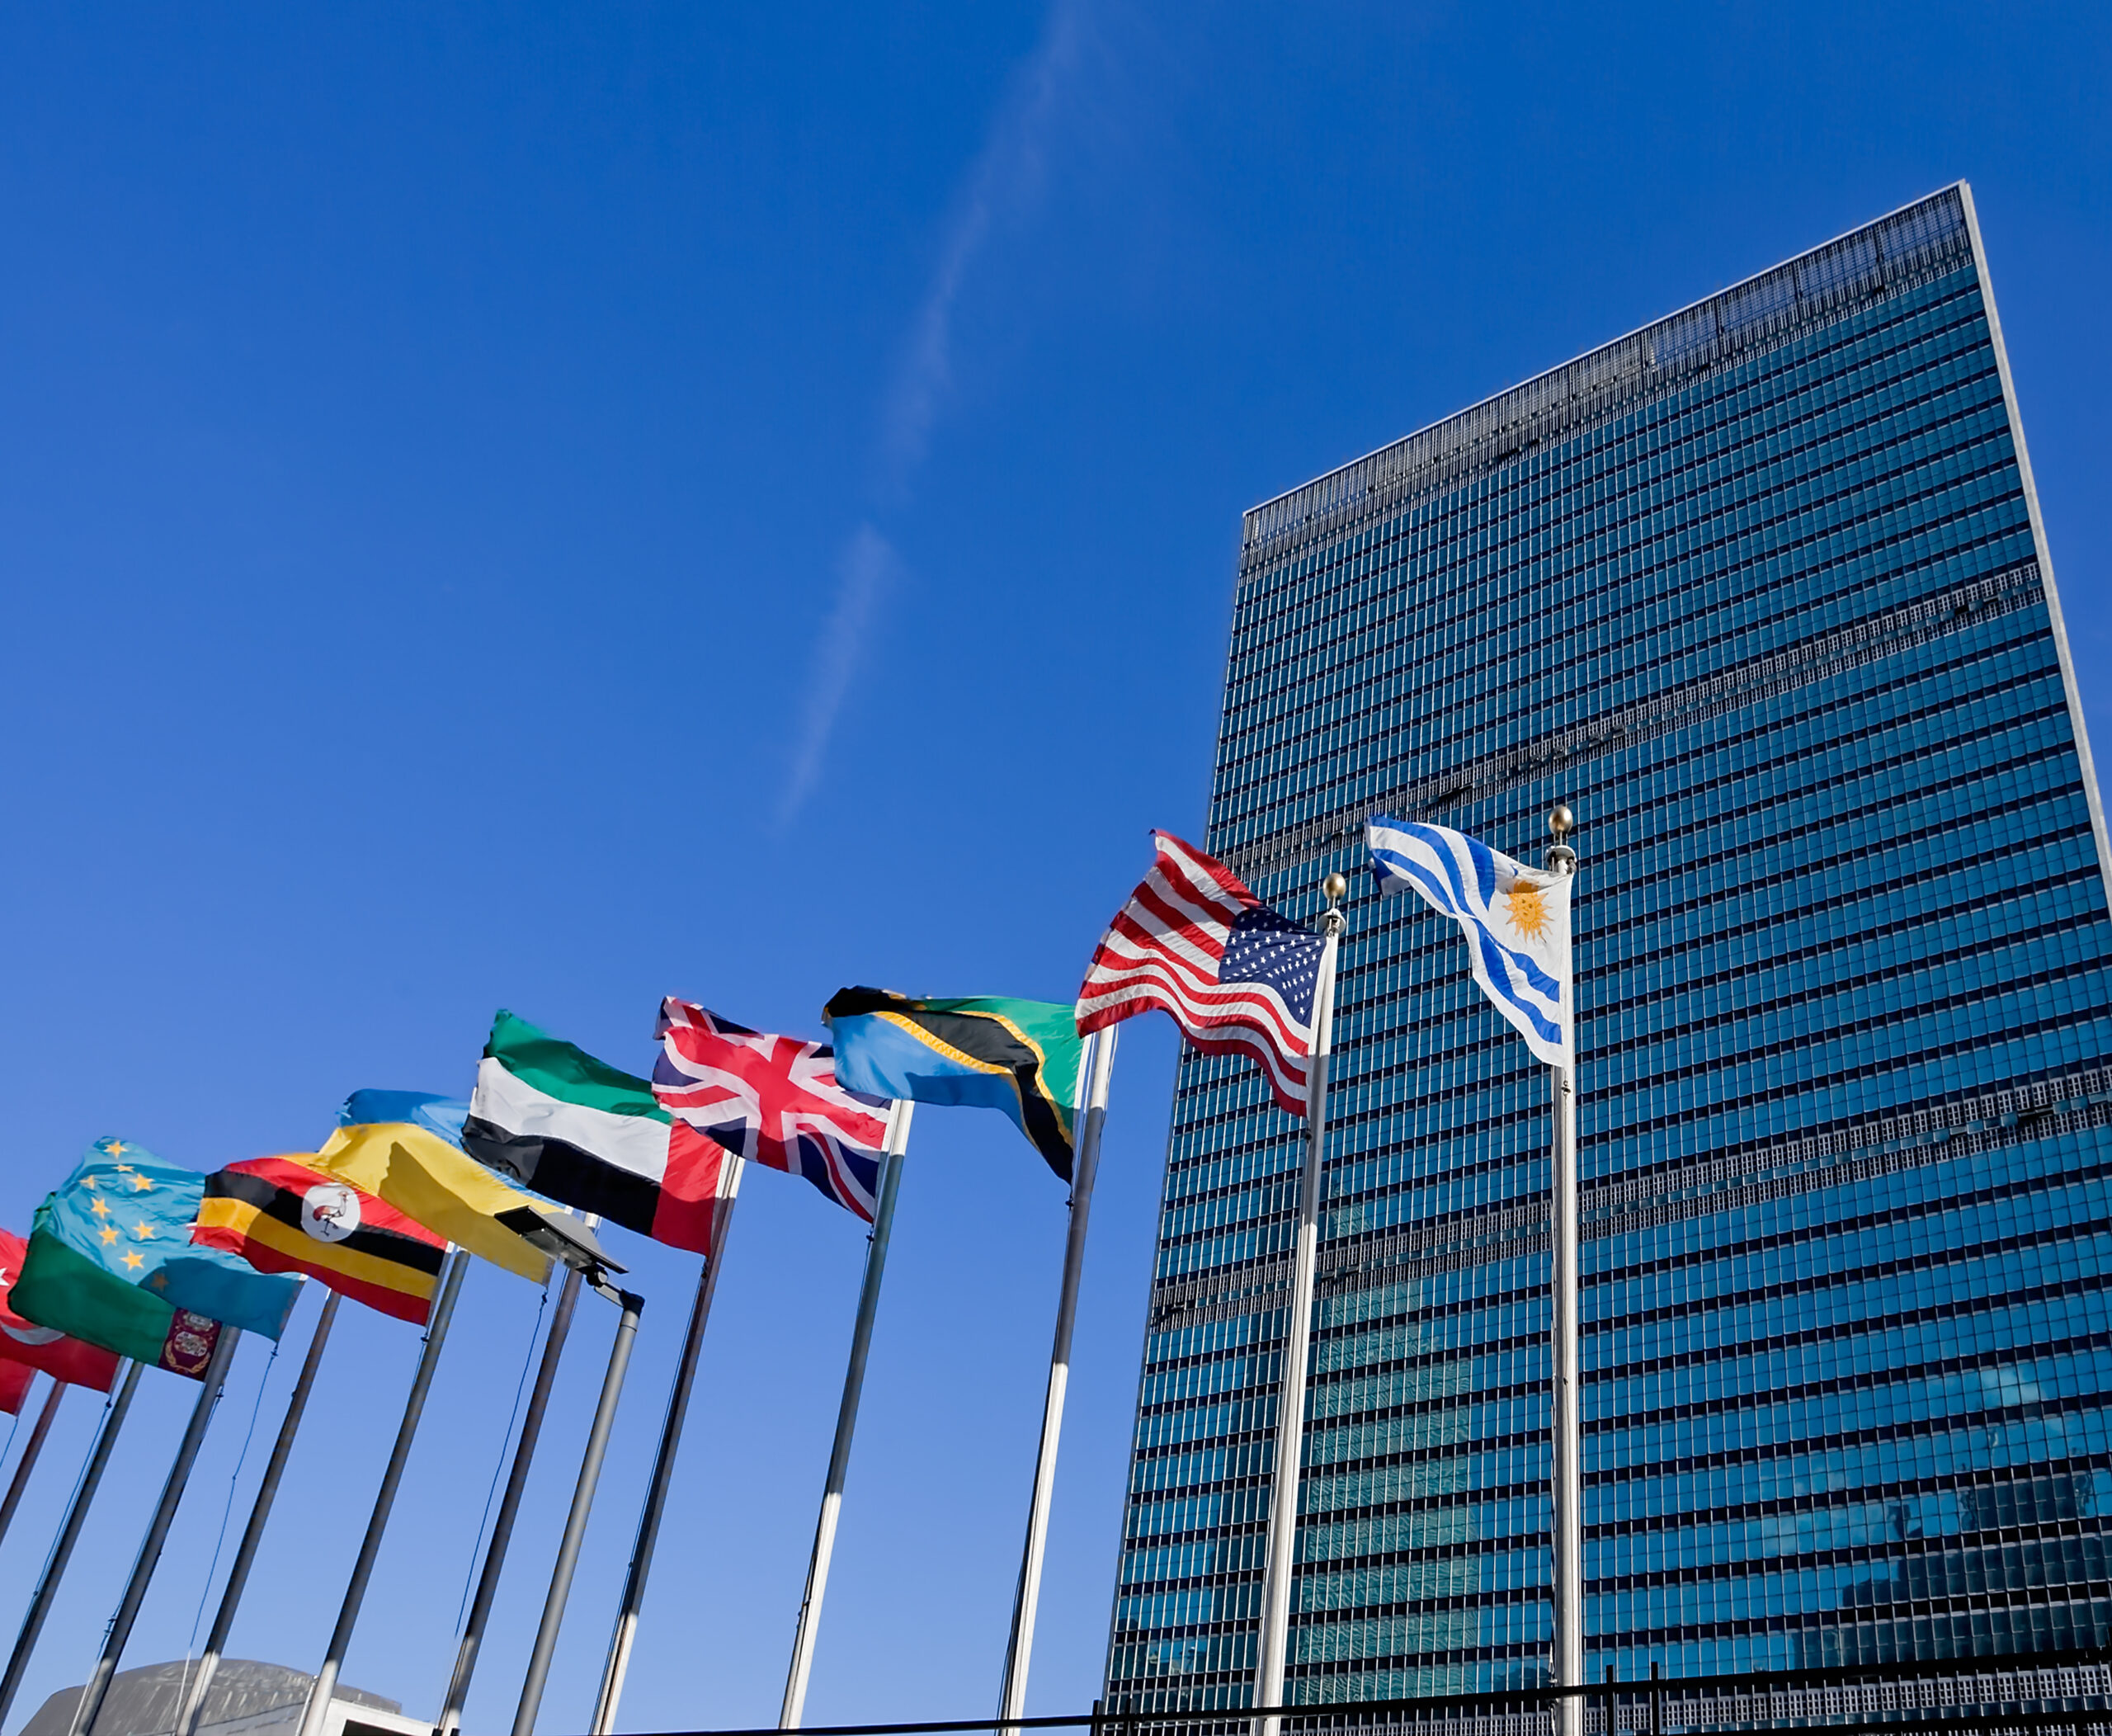 Страны организации оон. Штаб-квартира ООН В Нью-Йорке. Здание Генеральной Ассамблеи ООН В Нью-Йорке. Генассамблея ООН здание. Здание Генассамблея ООН В Нью-Йорке.